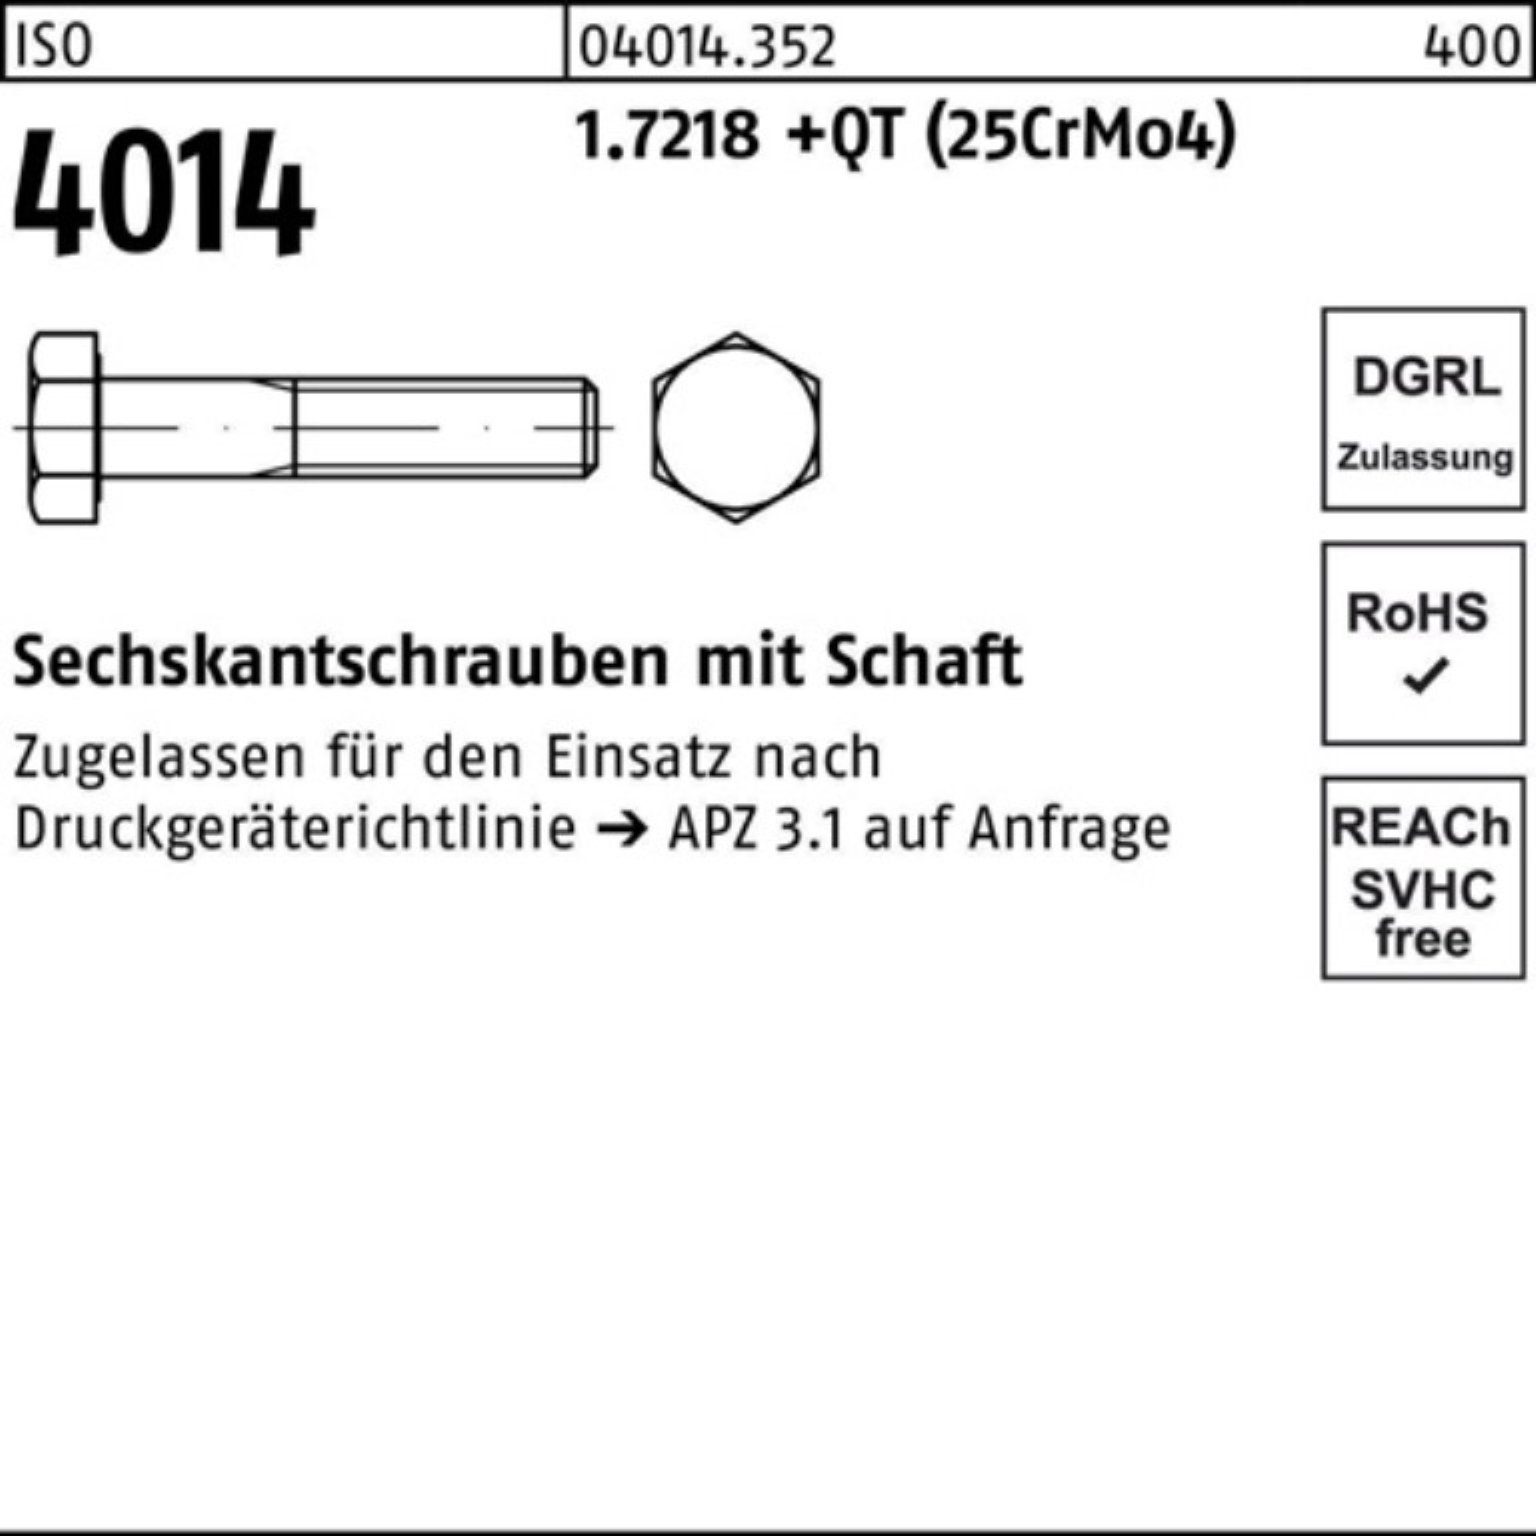 Bufab Sechskantschraube 100er 200 4014 Sechskantschraube (25Cr M30x 1.7218 ISO Schaft Pack +QT